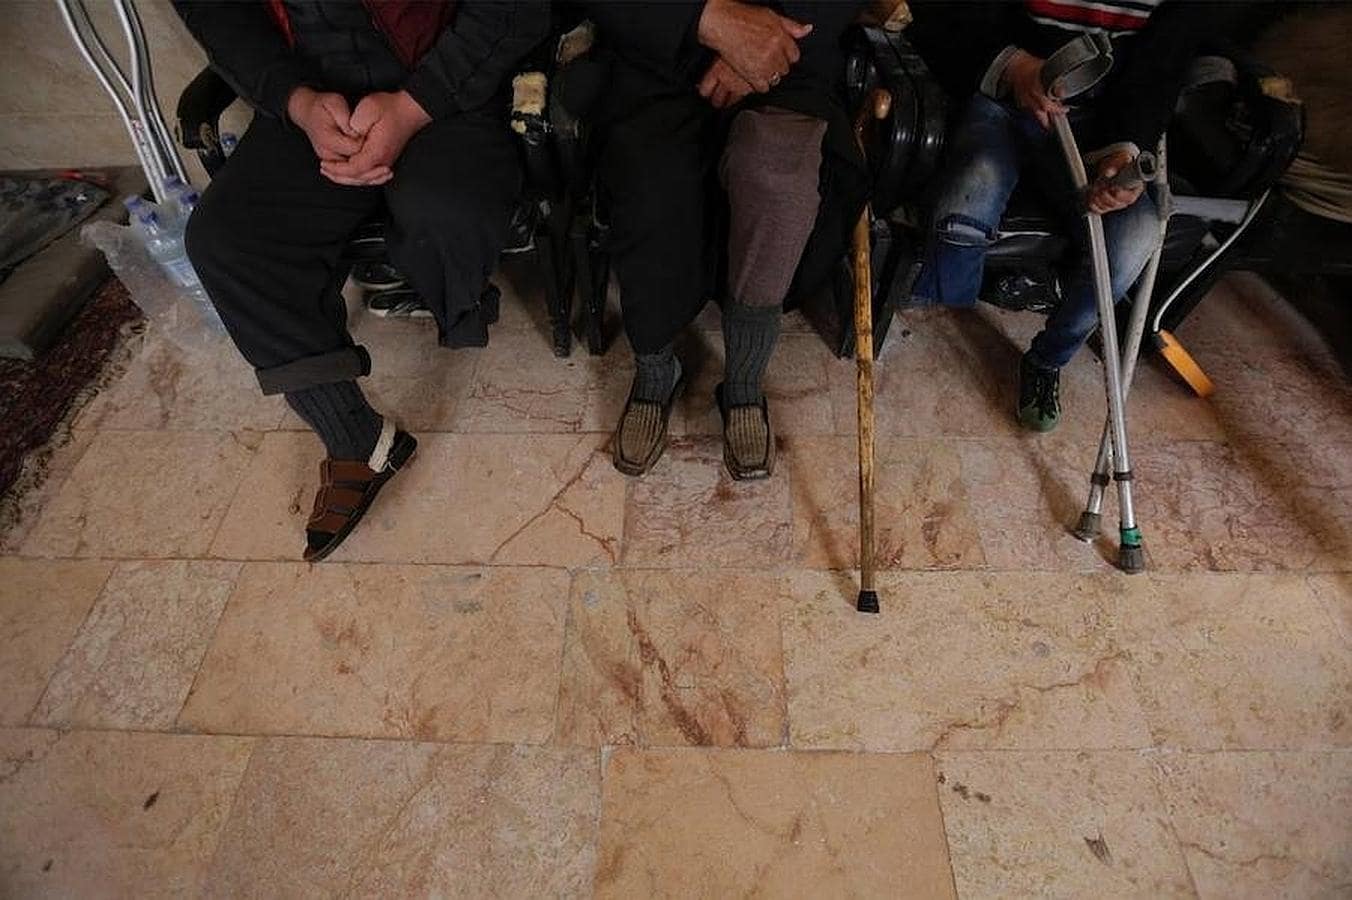 Hombres con sus piernas amputadas esperan para ser atendidos por la clínica ambulante de Khamis y Khlouf